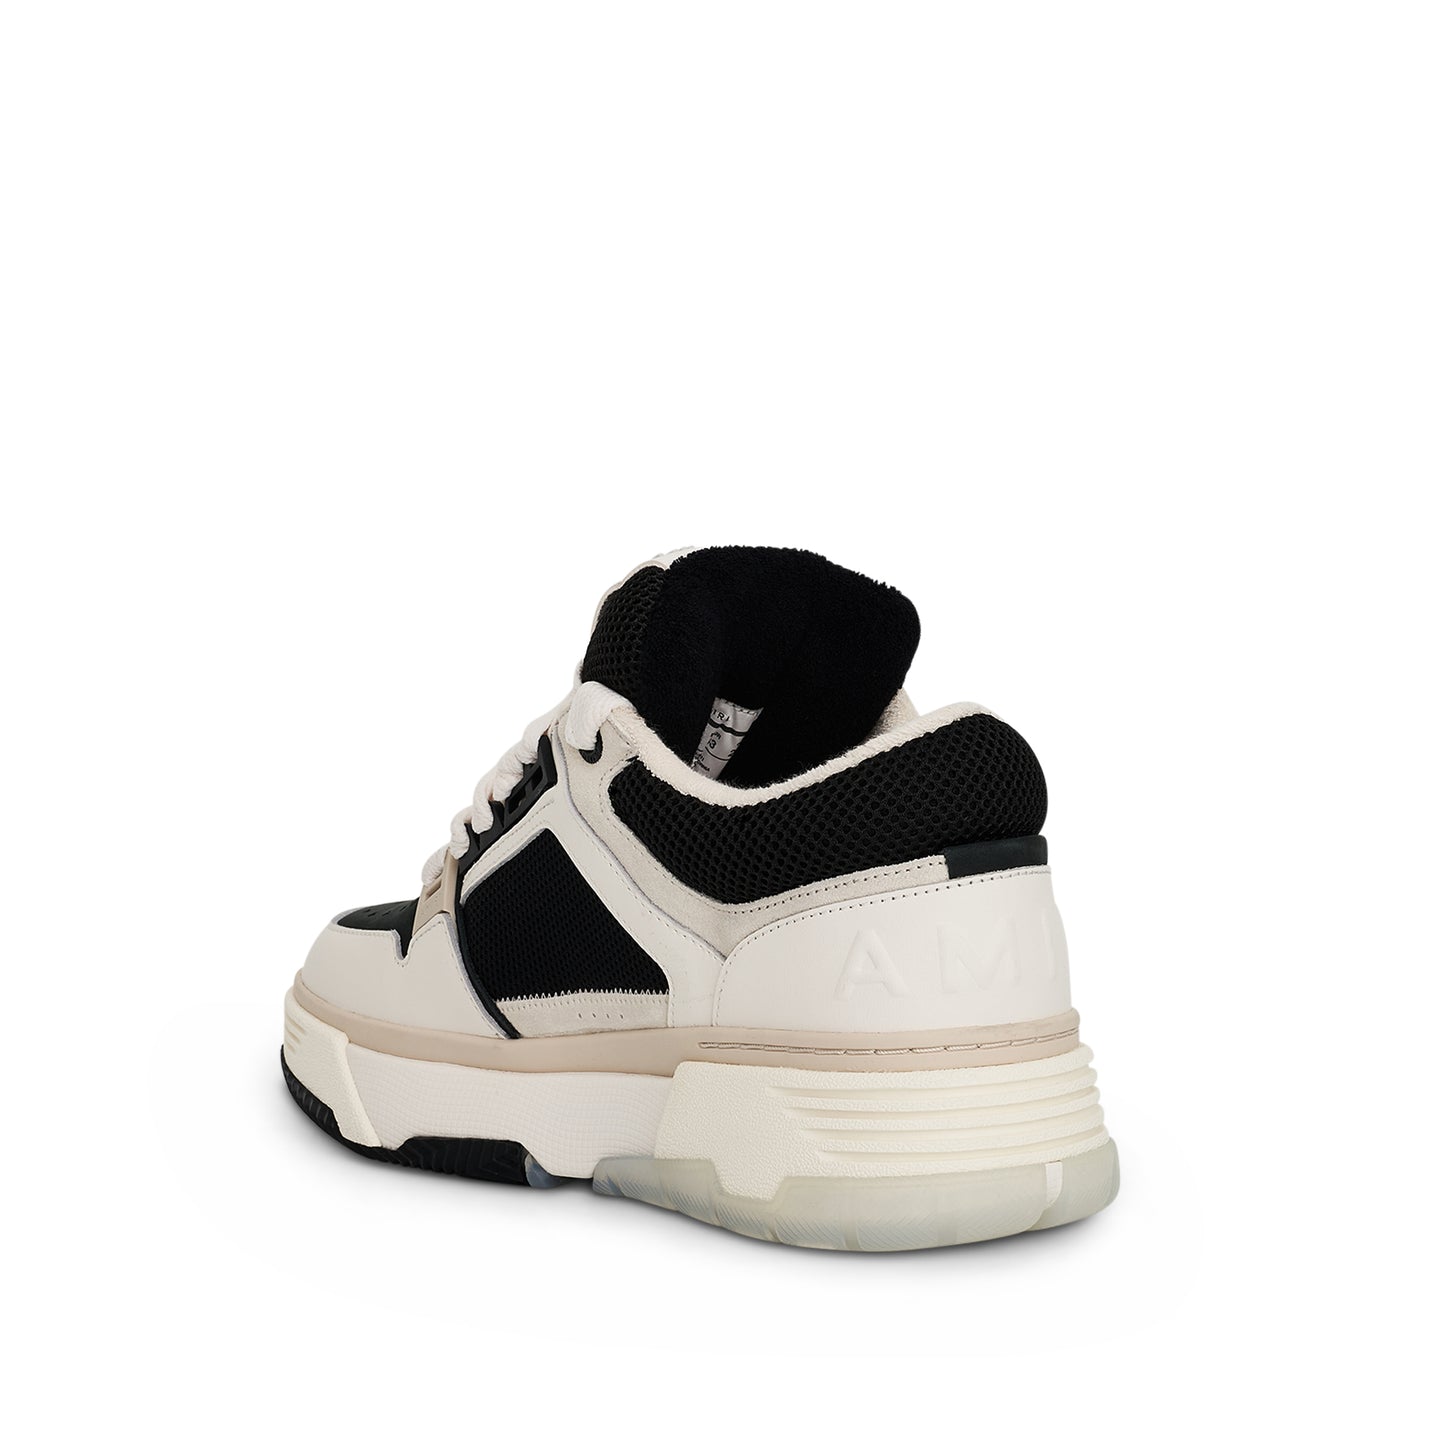 MA-1 Sneaker in White/Black